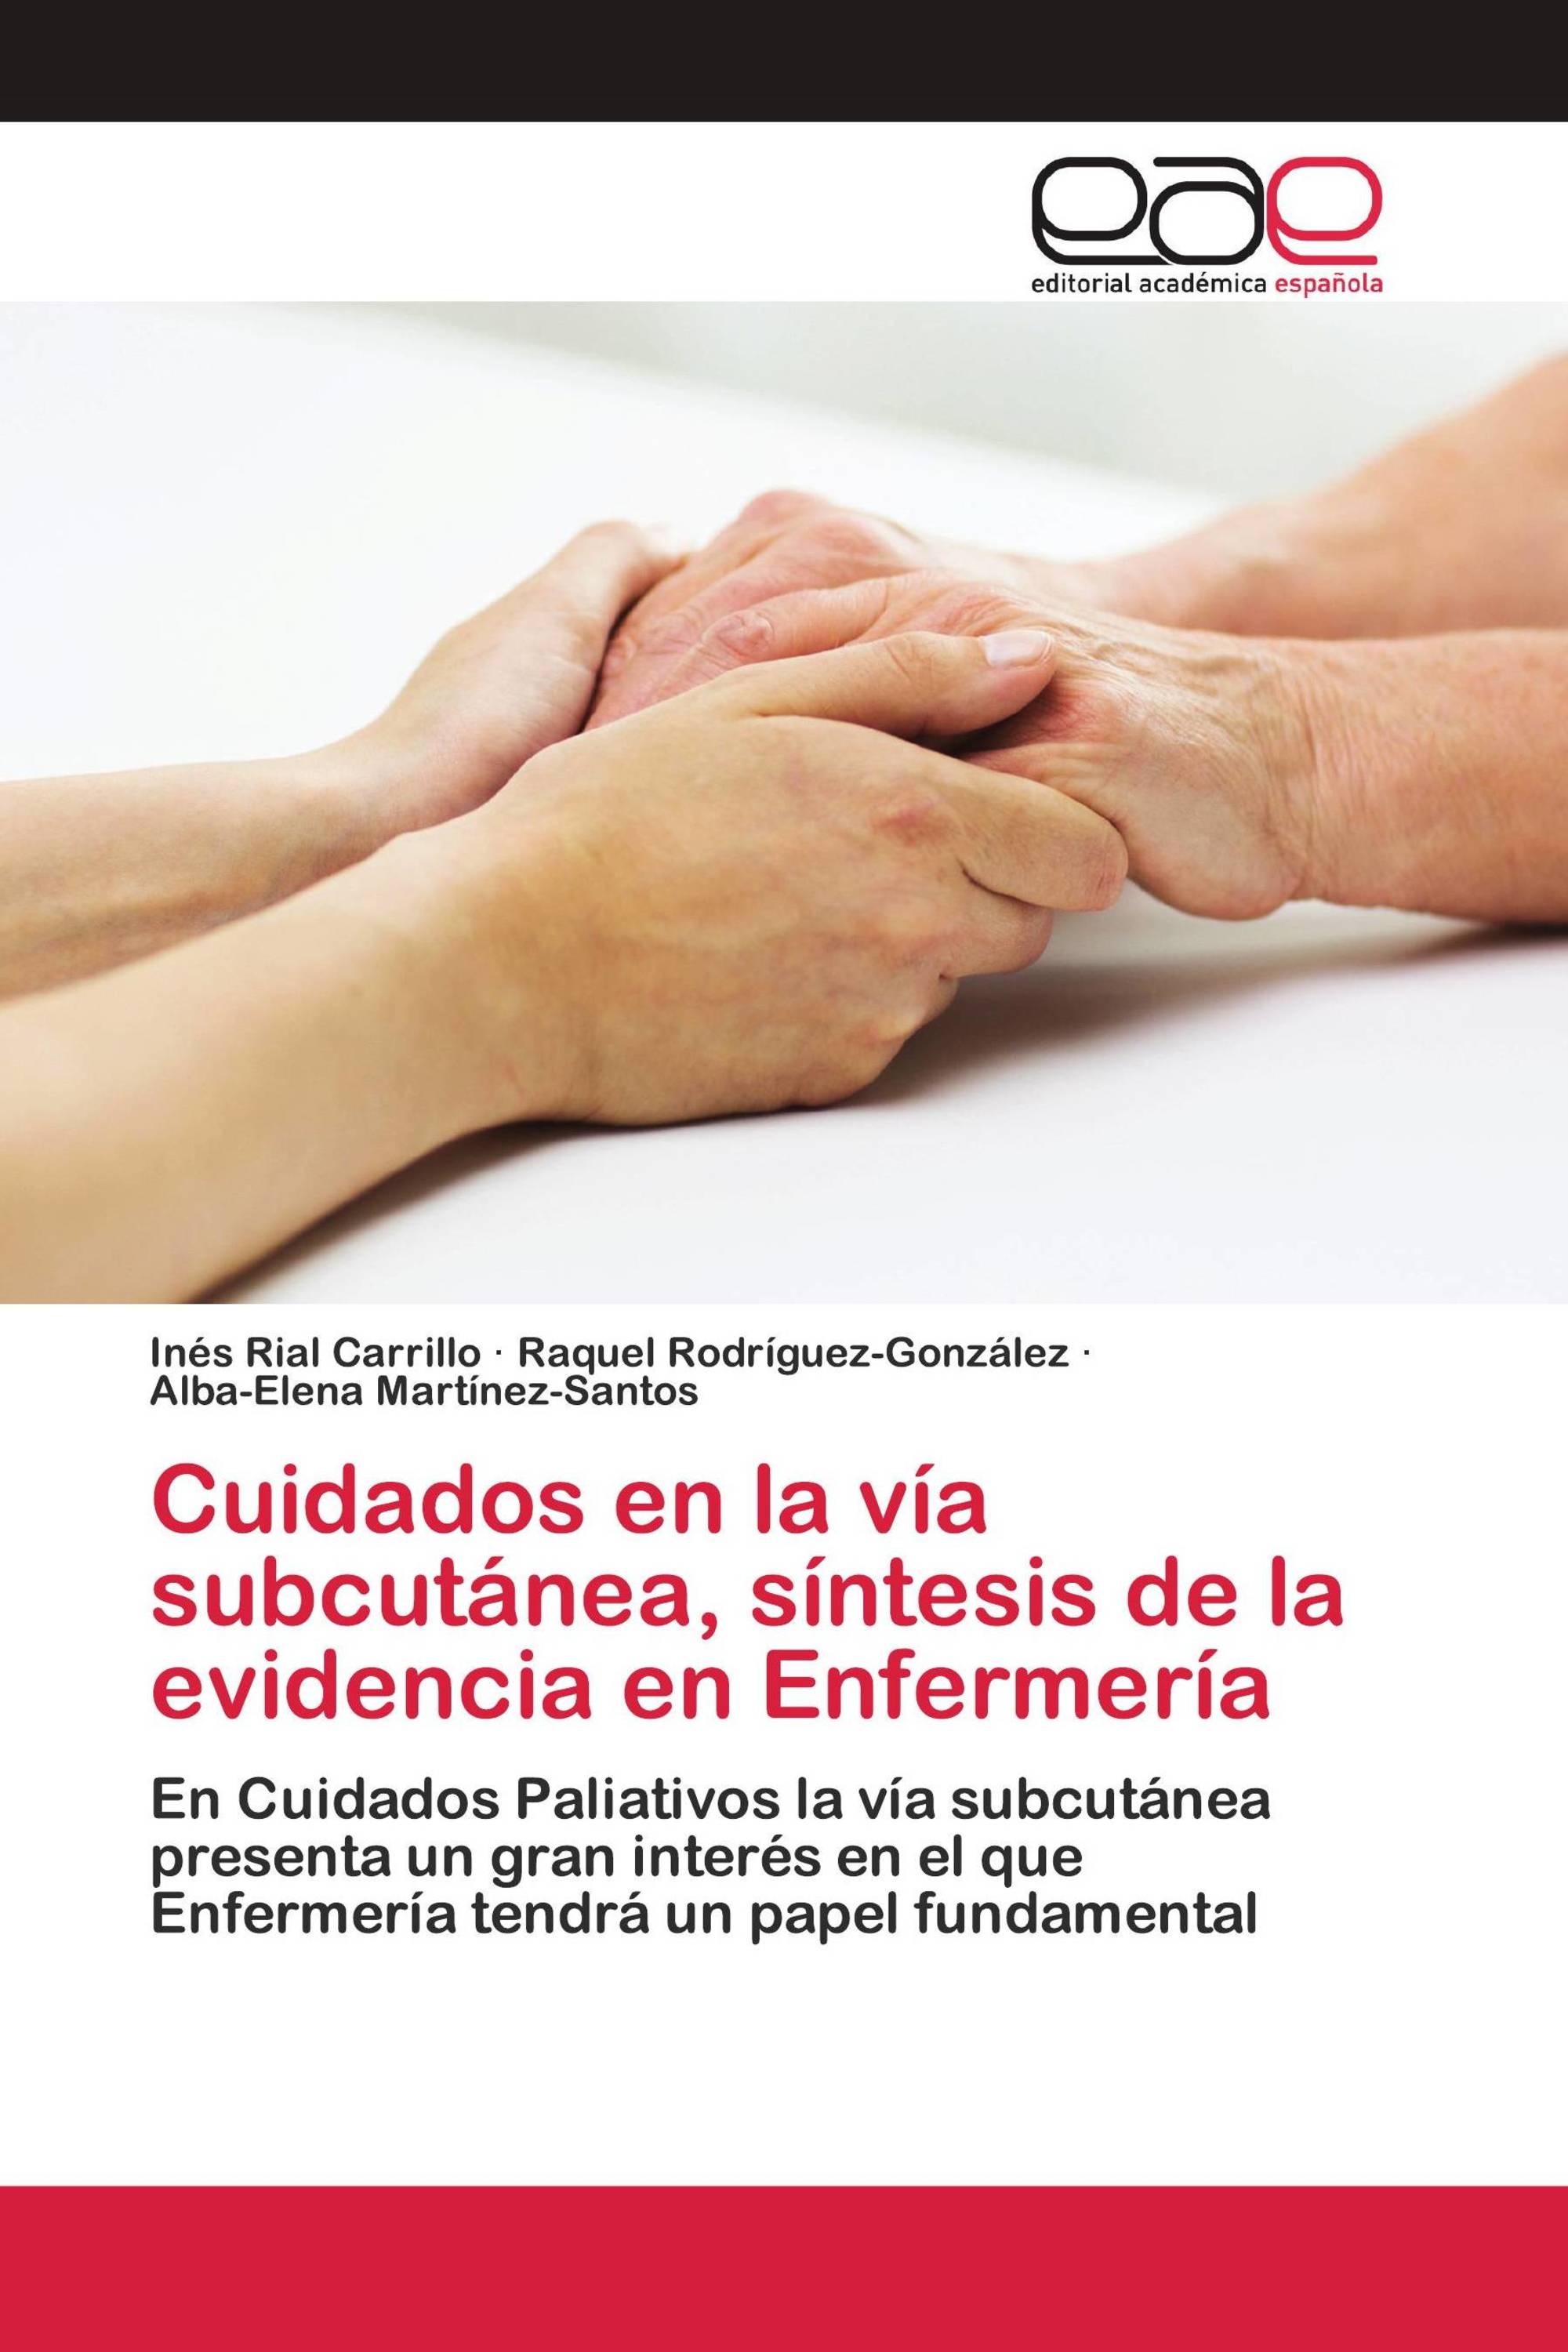 Imagen de portada del libro Cuidados en la vía subcutánea, síntesis de la evidencia en Enfermería